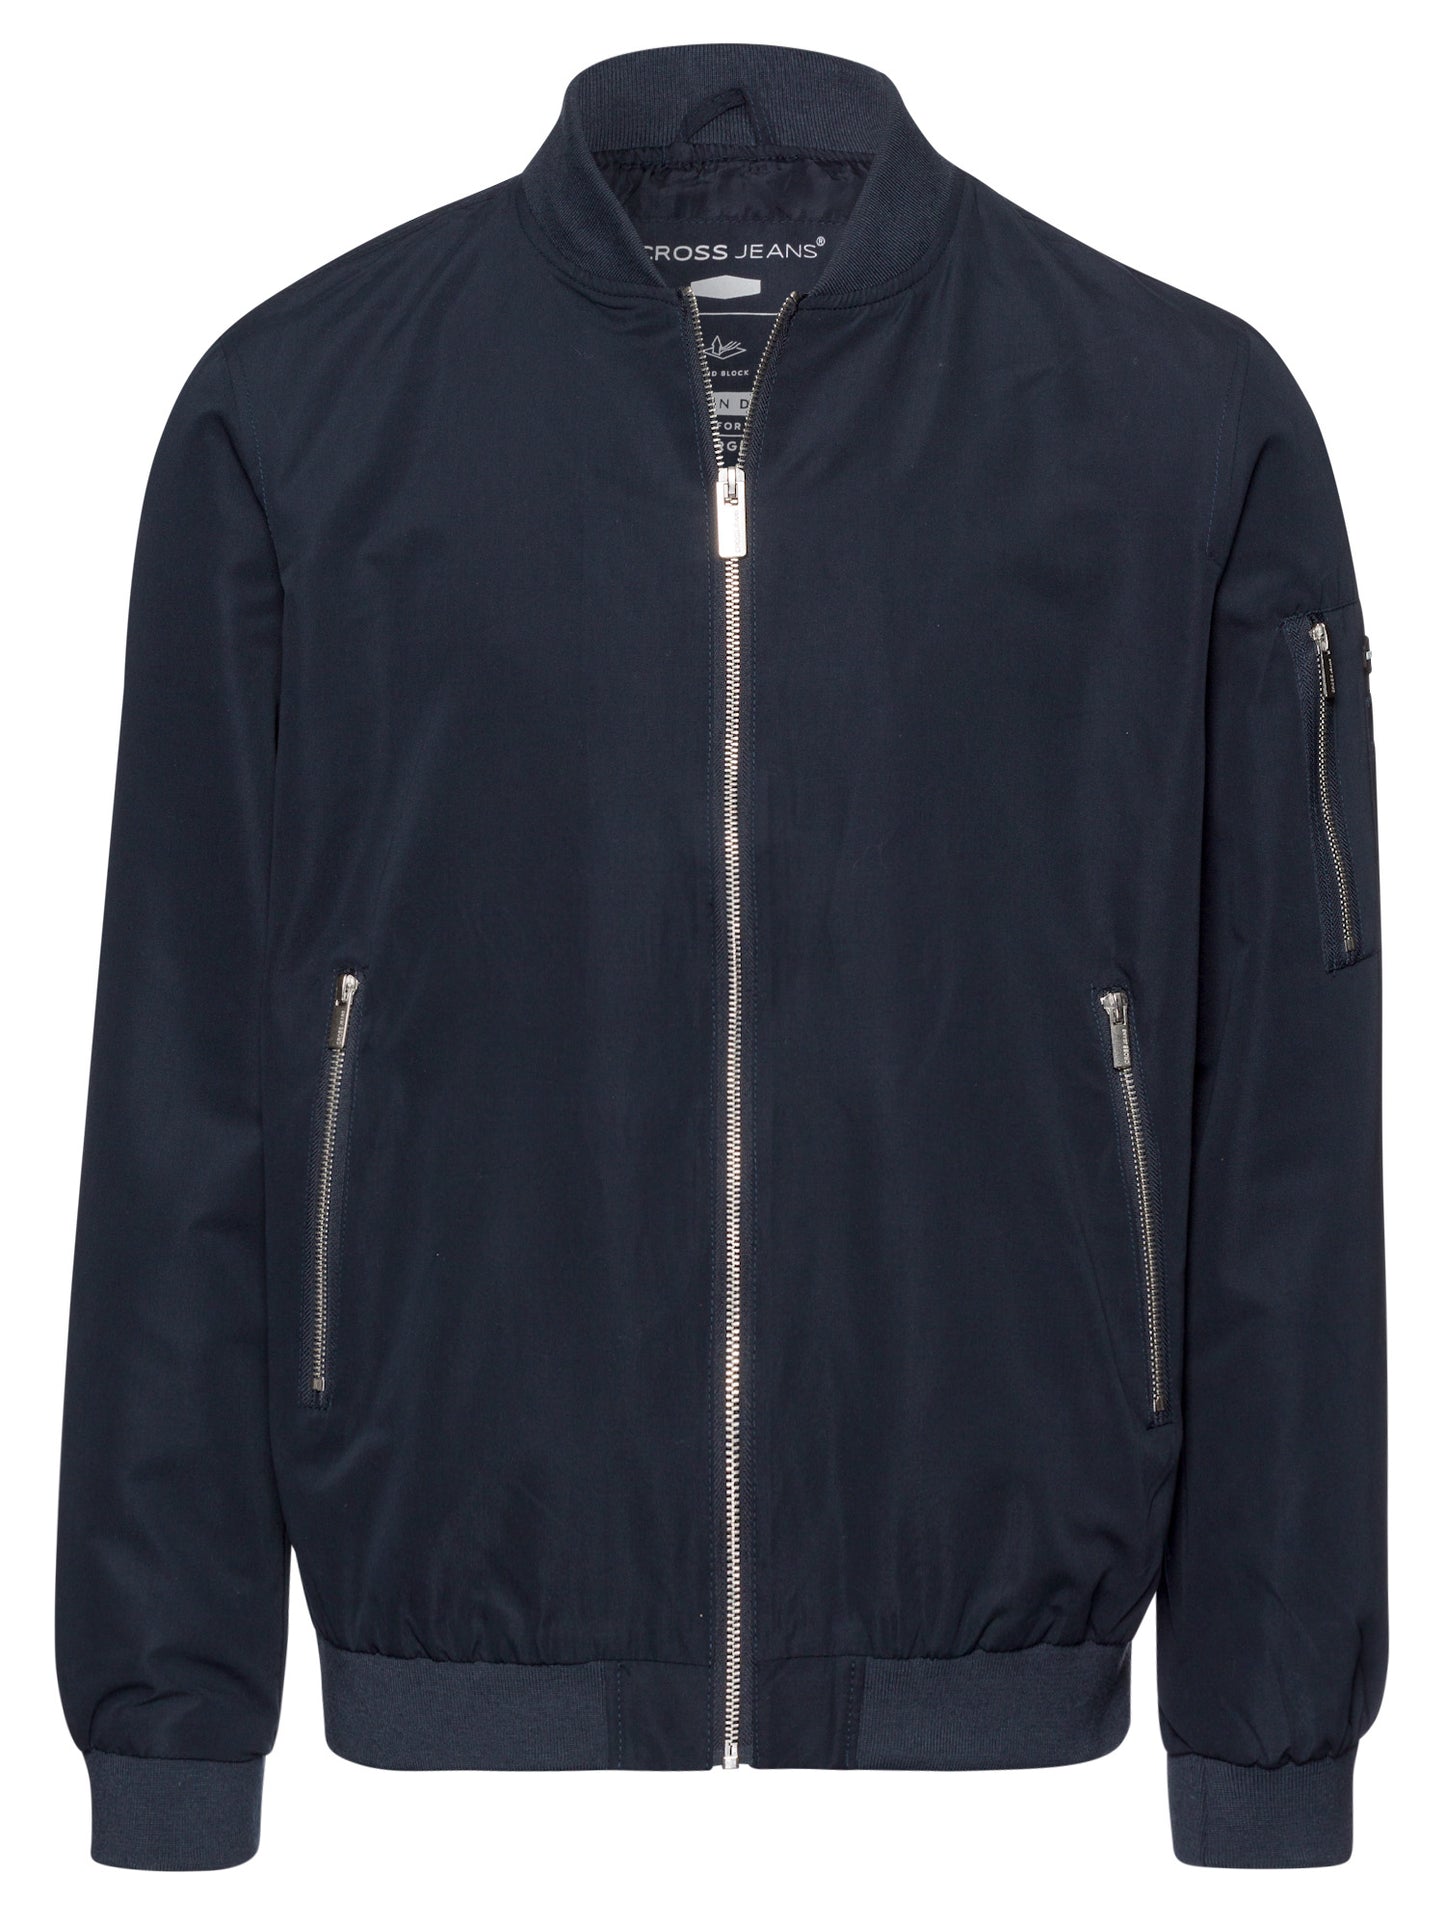 Men's regular zip bomber jacket with zip pockets navy blue.